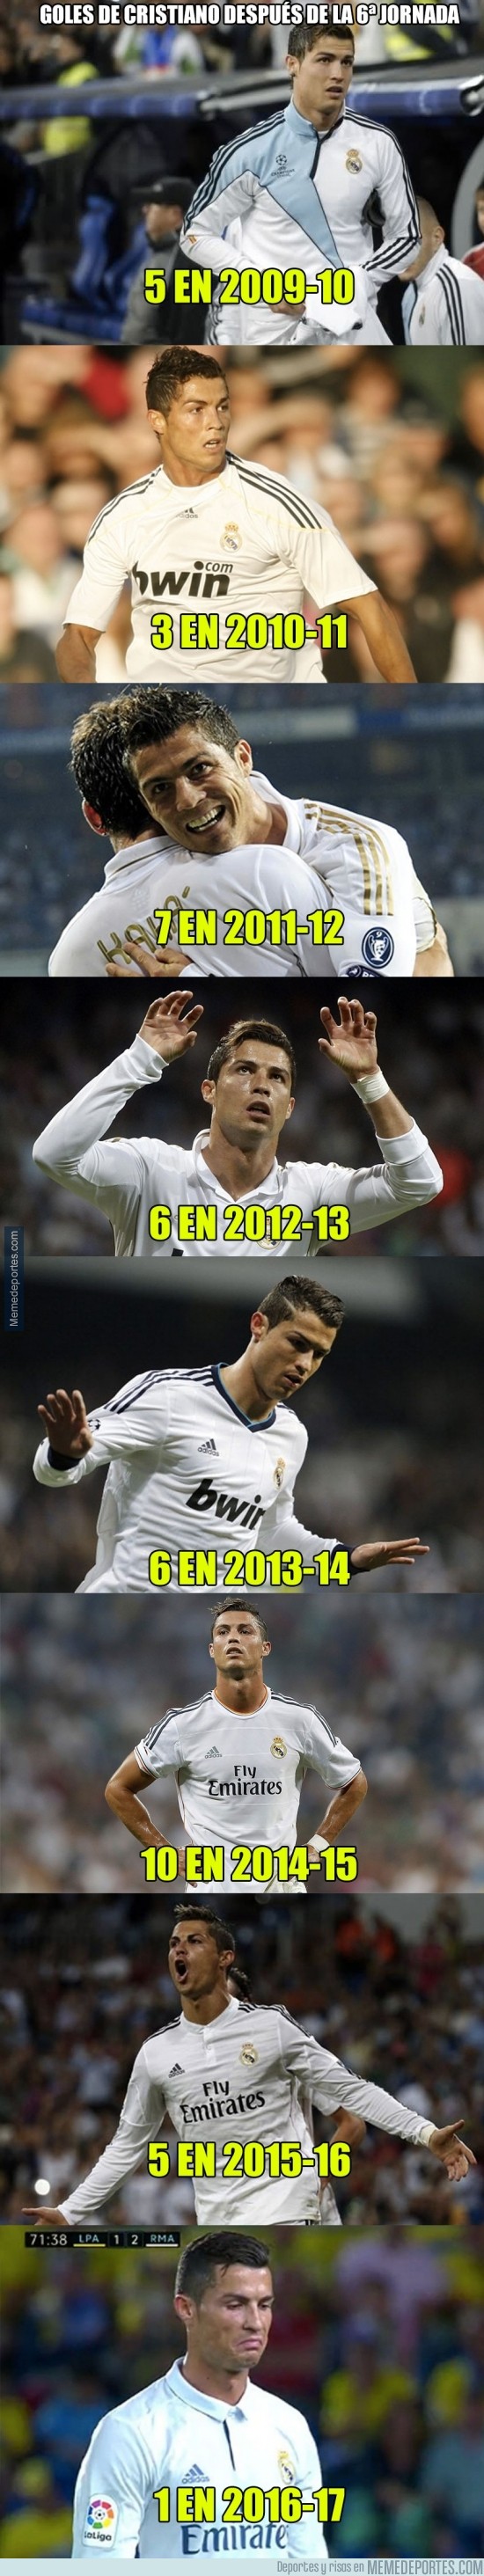 911065 - Los datos de Cristiano Ronaldo tras las 6a jornada en todas sus temporadas en el Real Madrid